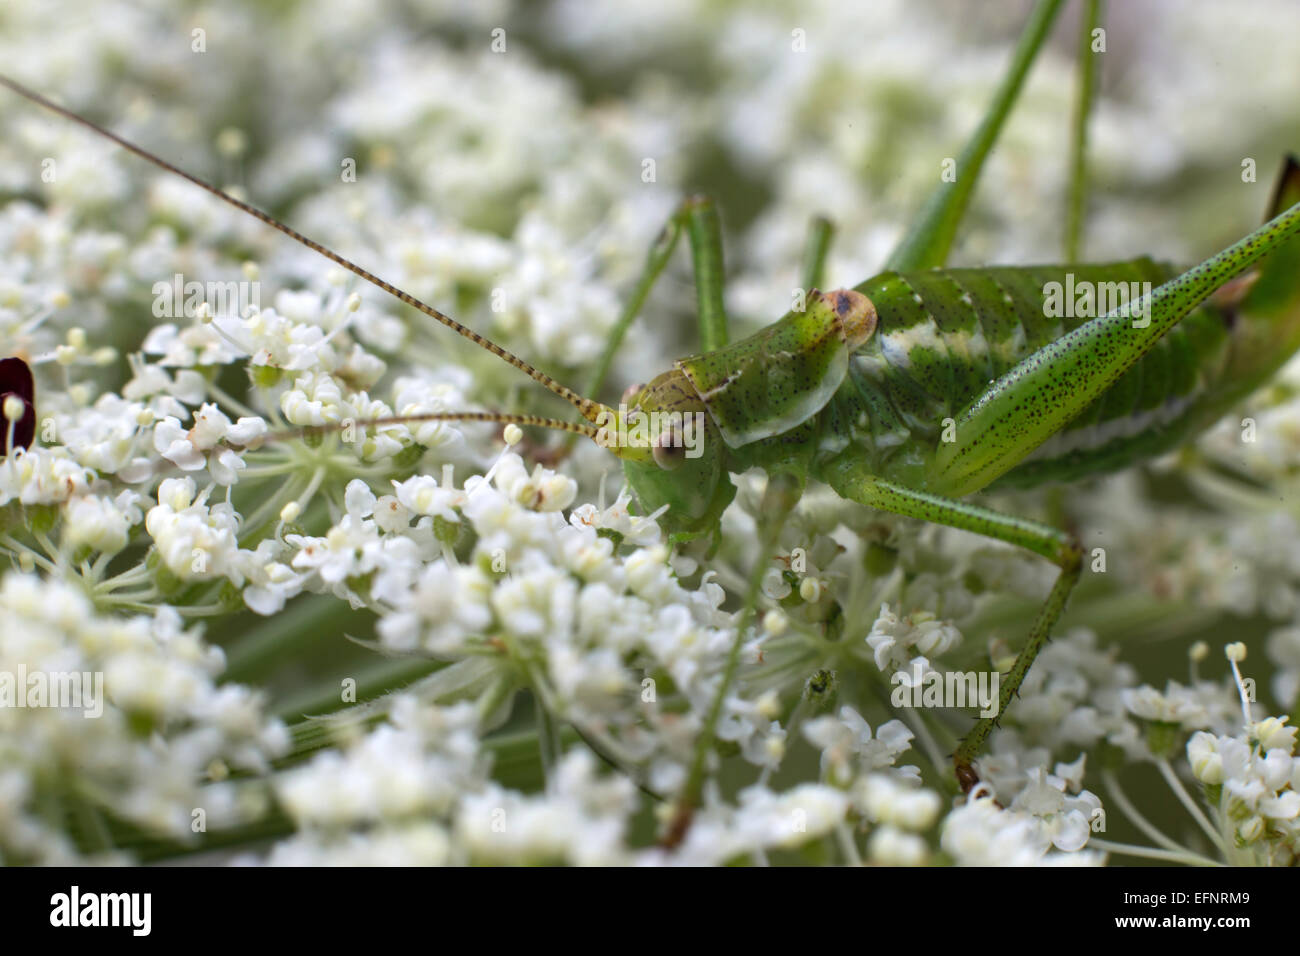 Long-horned grasshopper eating flowers. Stock Photo